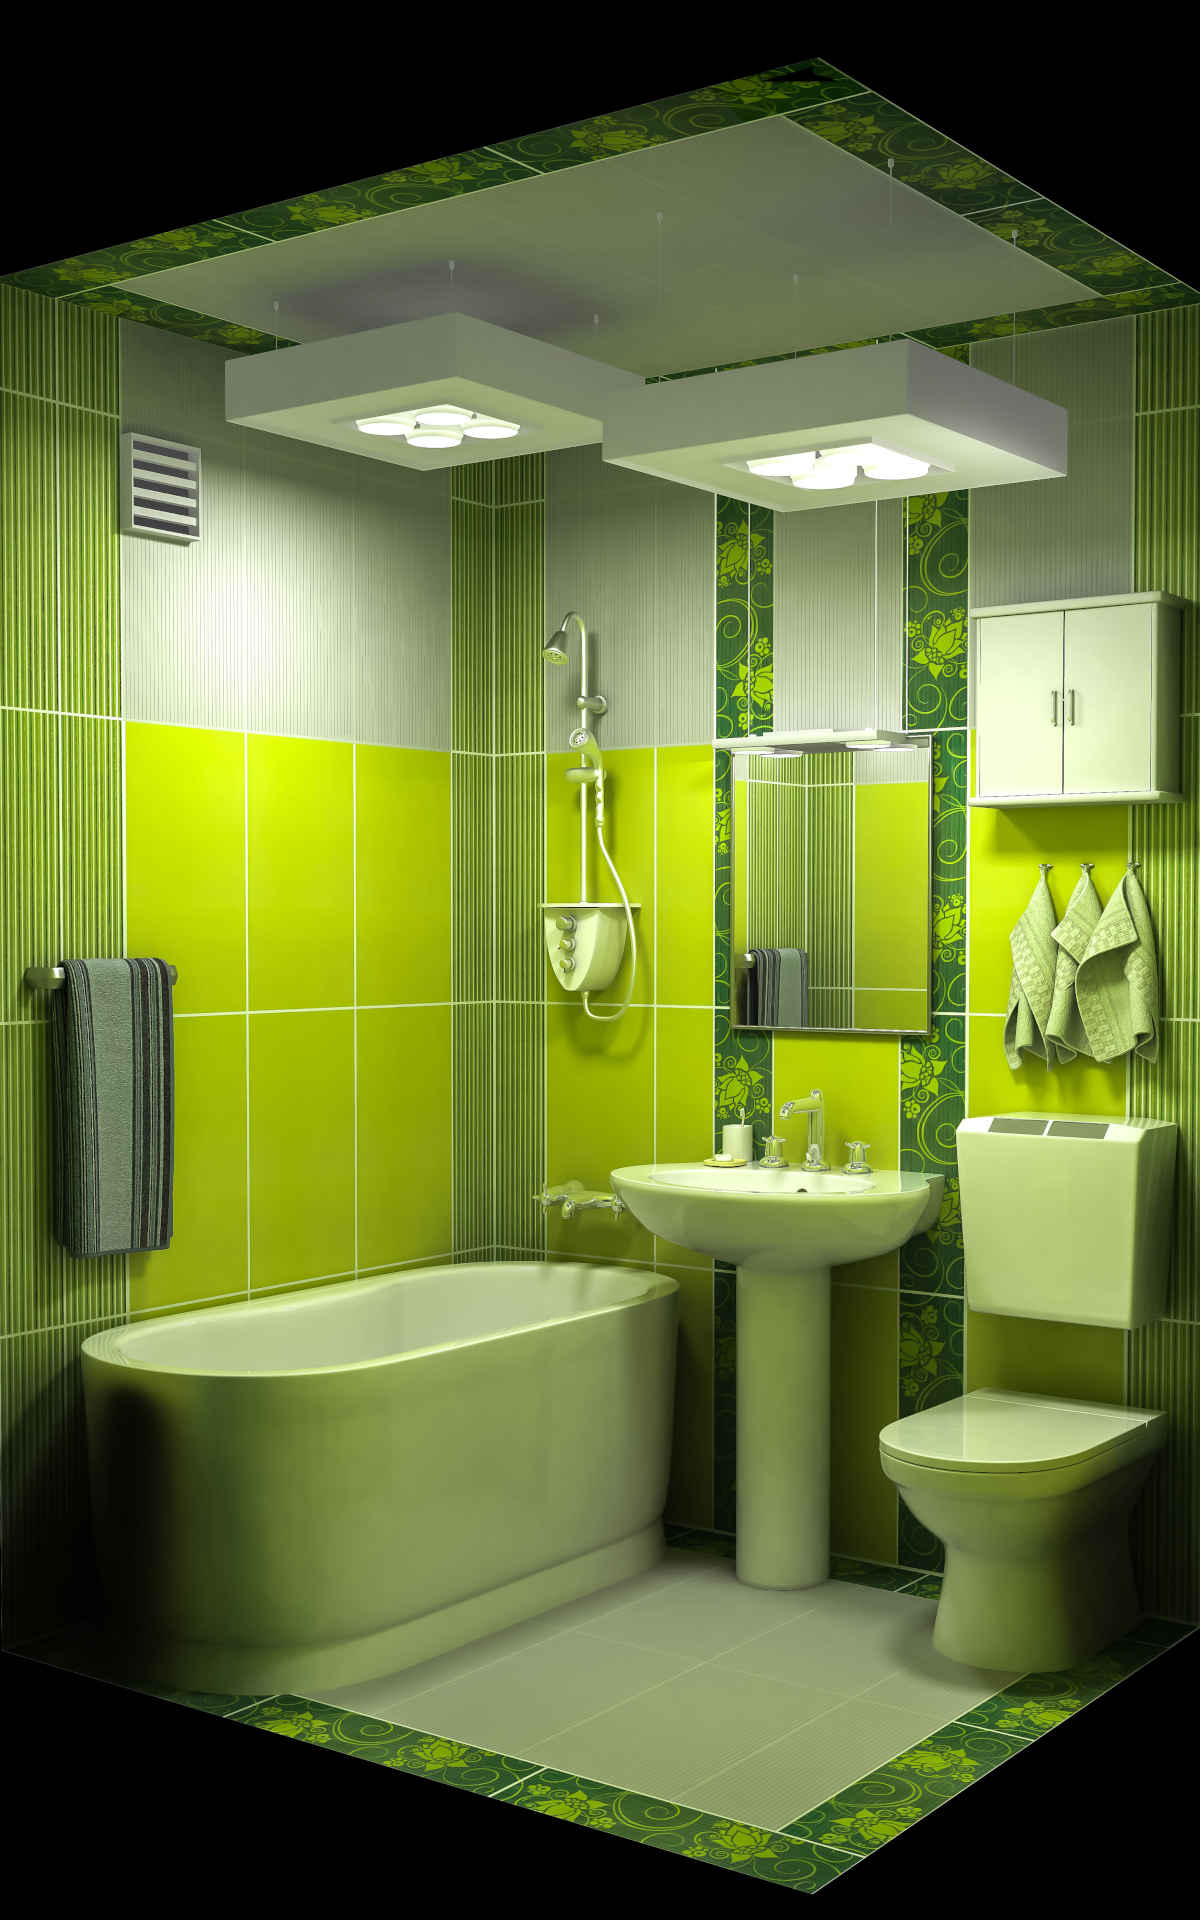 Дизайн туалета и ванной комнаты – фото туалетных комнат